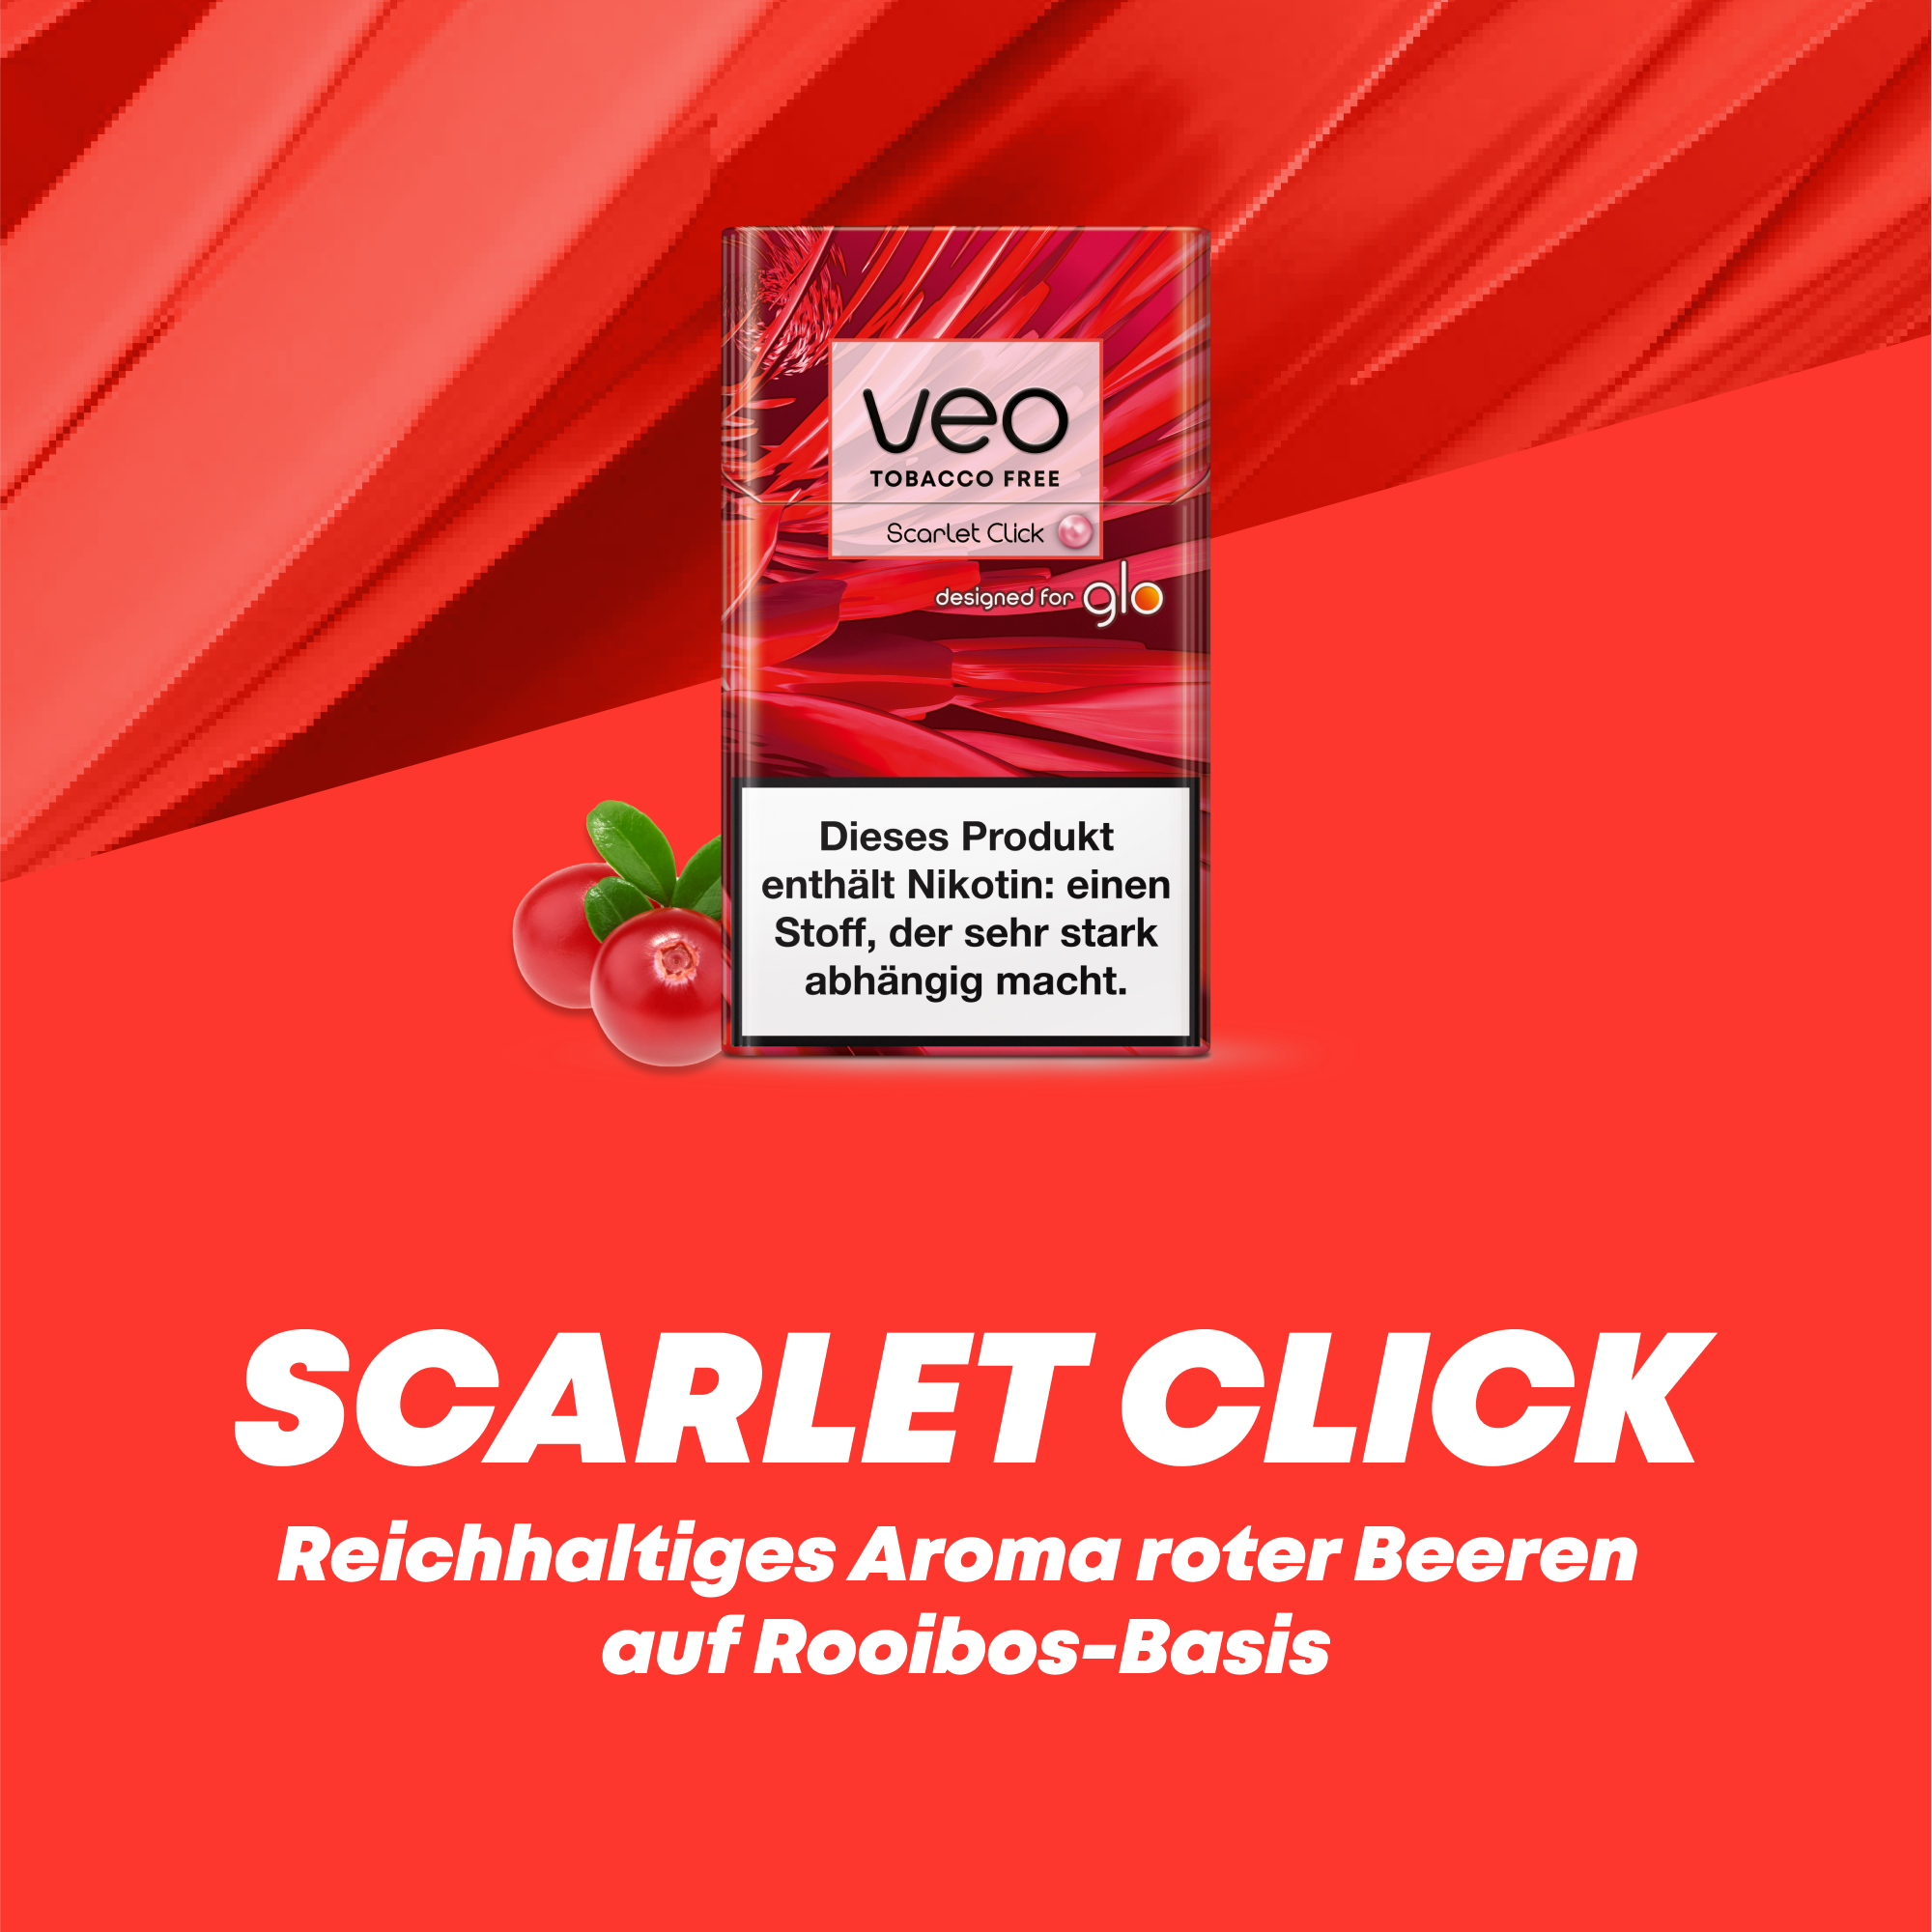 glo veo Scarlet Click (Schachtel)